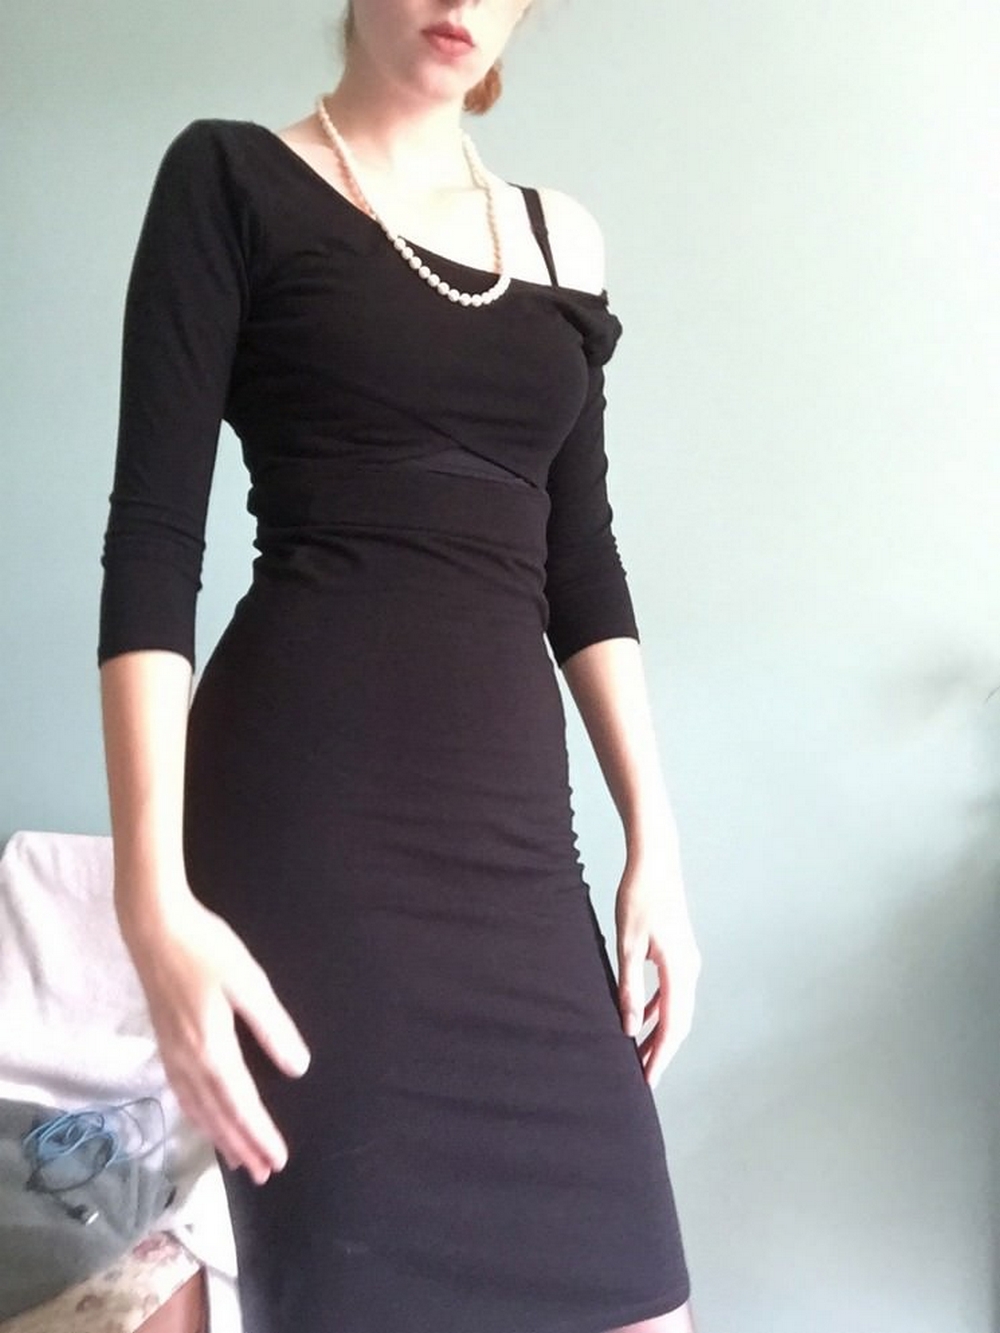 Порно видео девушка в черном платье